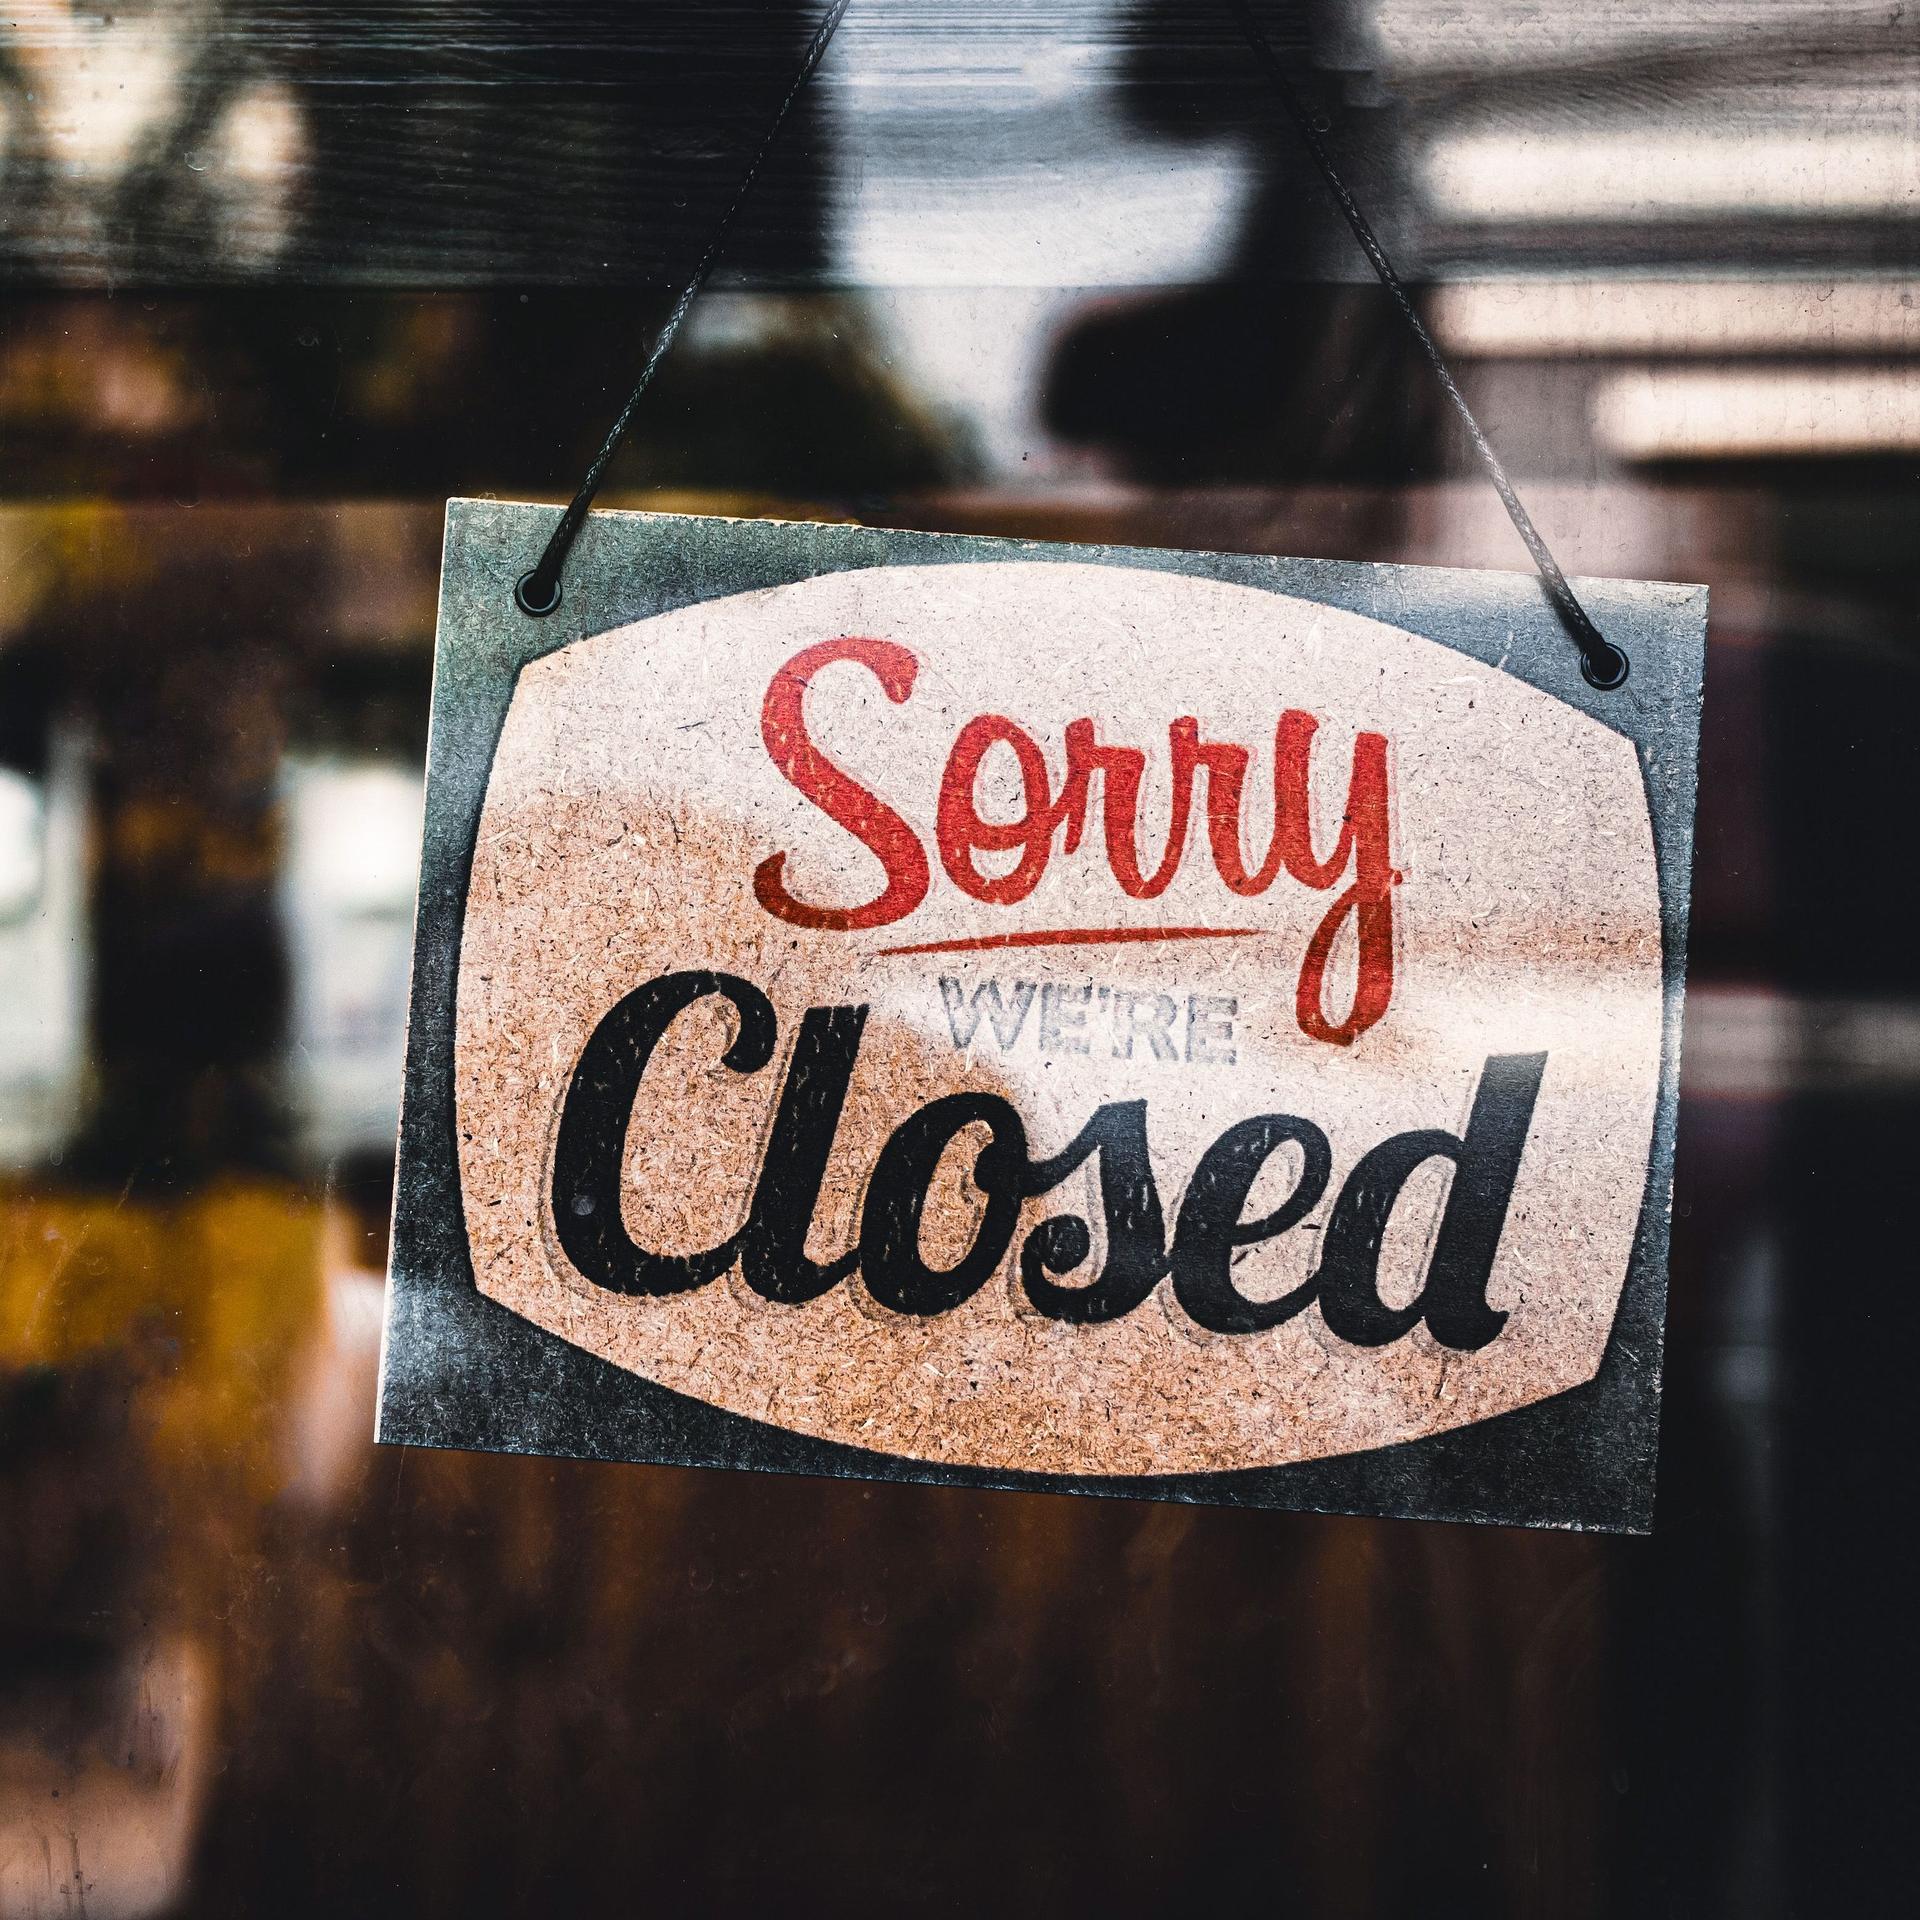 Schild mit der Aufschrift "Sorry we're closed" hängt hinter einer Glasscheibe von einem Laden.